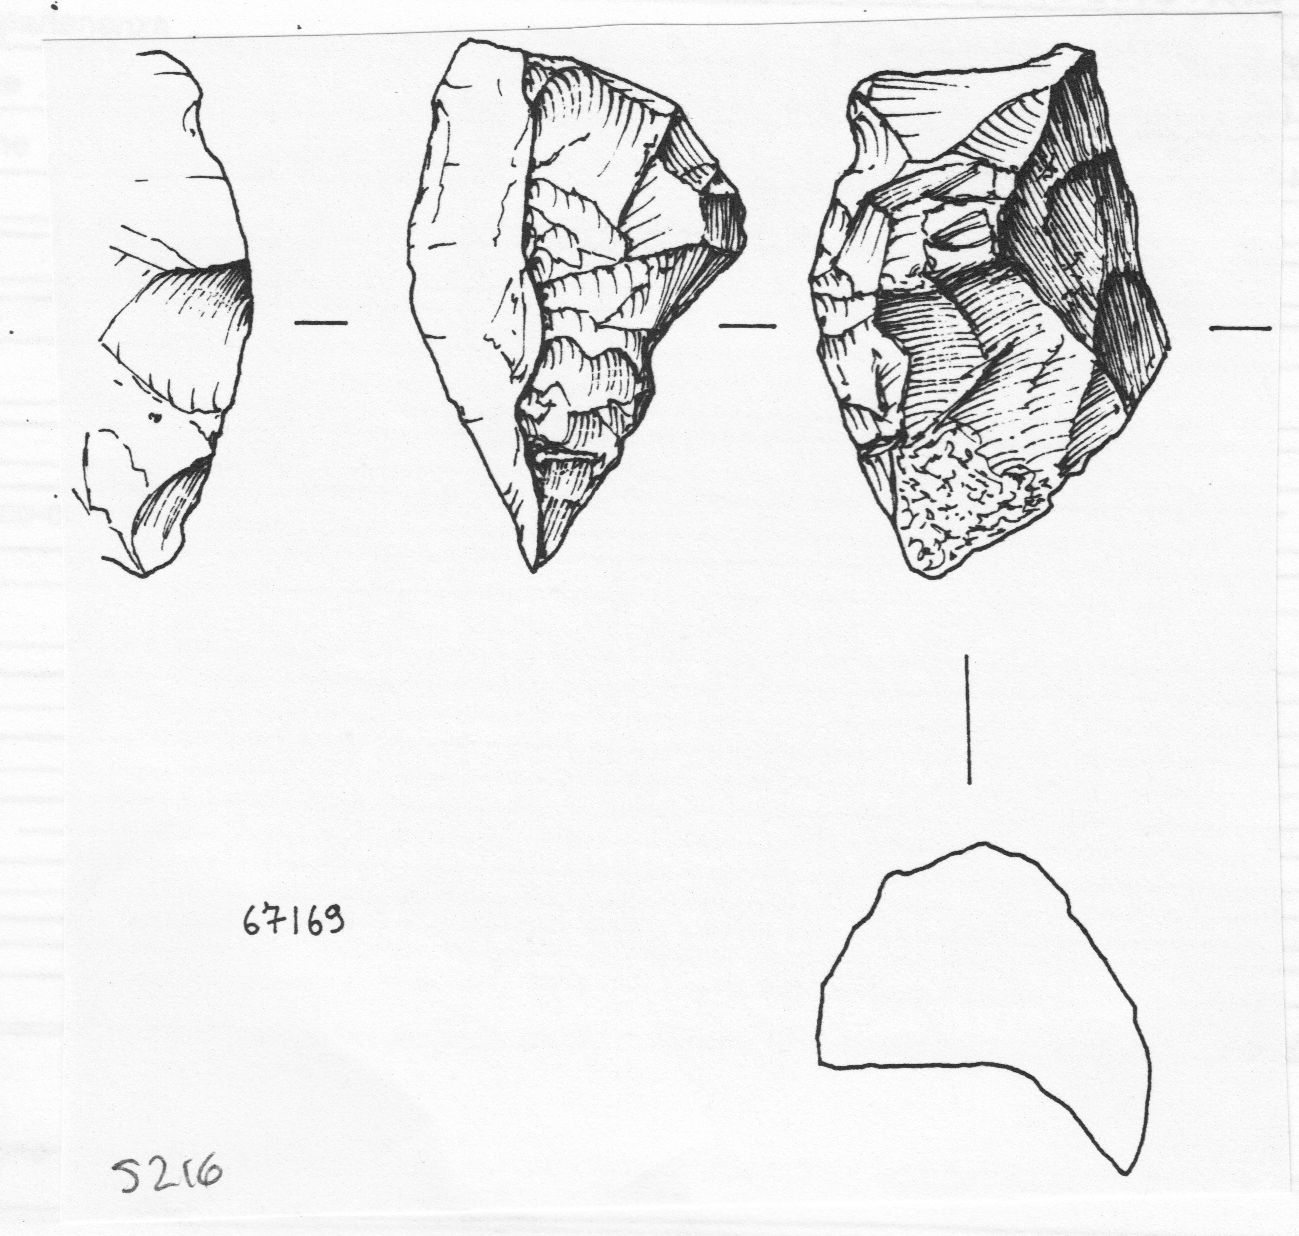 raschiatoio, raschiatoio semplice convesso (inizio Paleolitico medio)